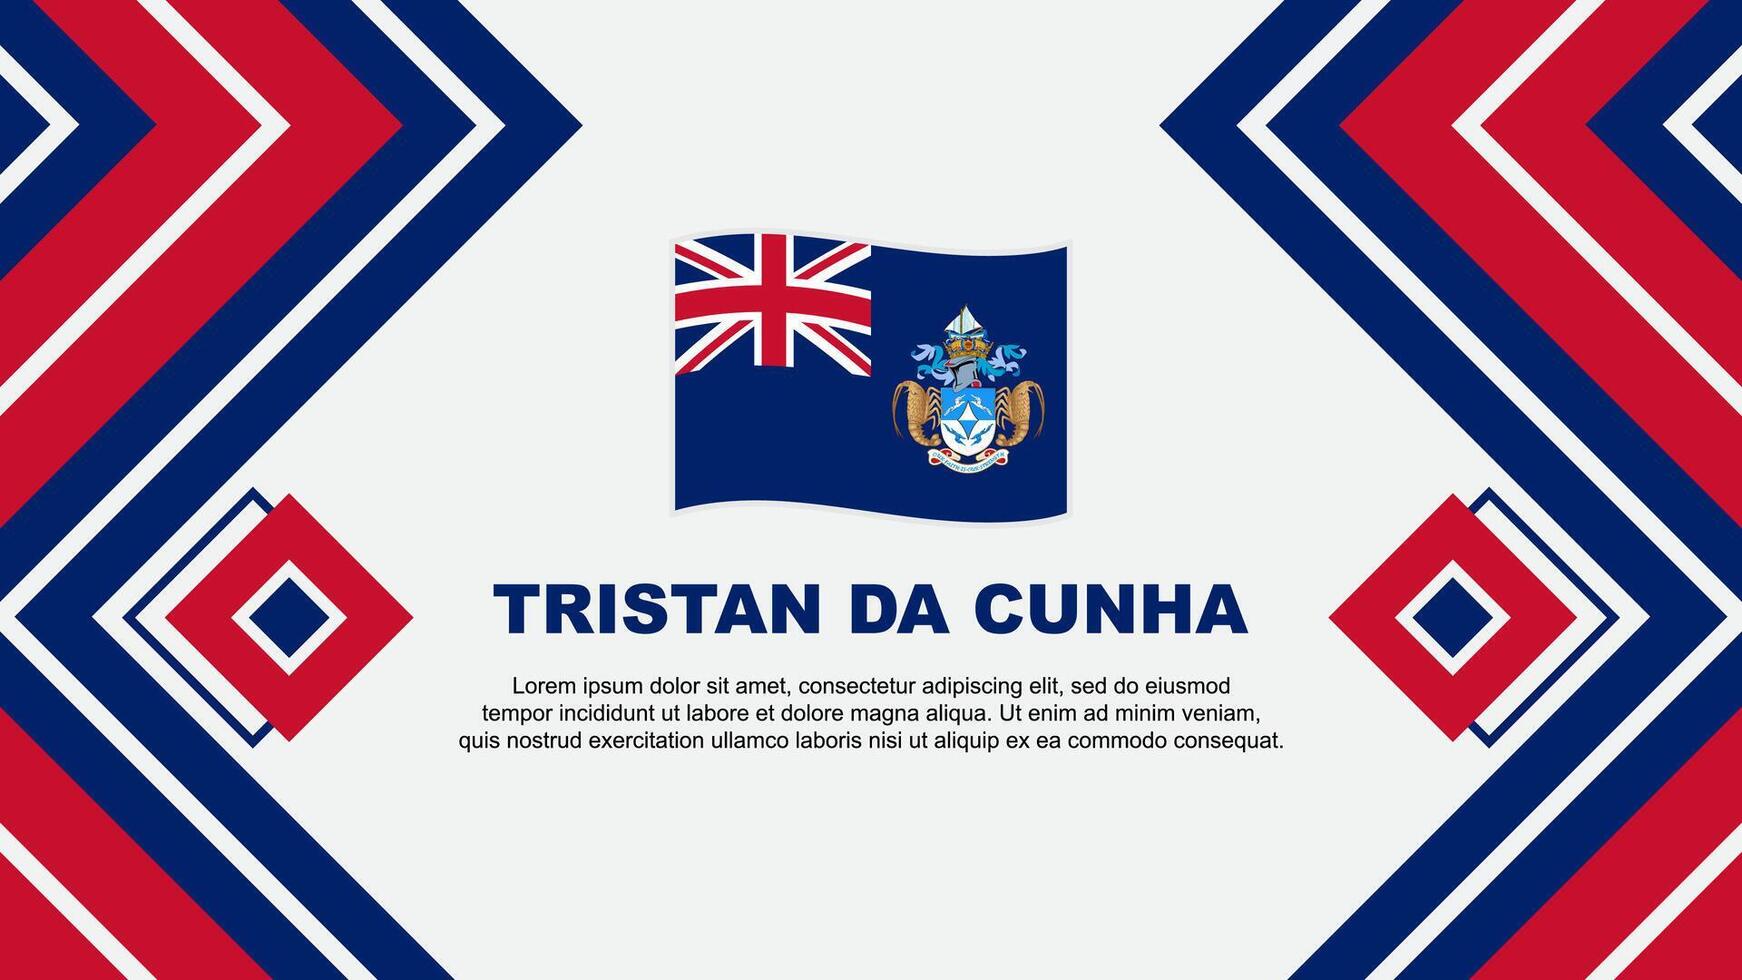 Tristan Da Cunha Flag Abstract Background Design Template. Tristan Da Cunha Independence Day Banner Wallpaper Vector Illustration. Tristan Da Cunha Design